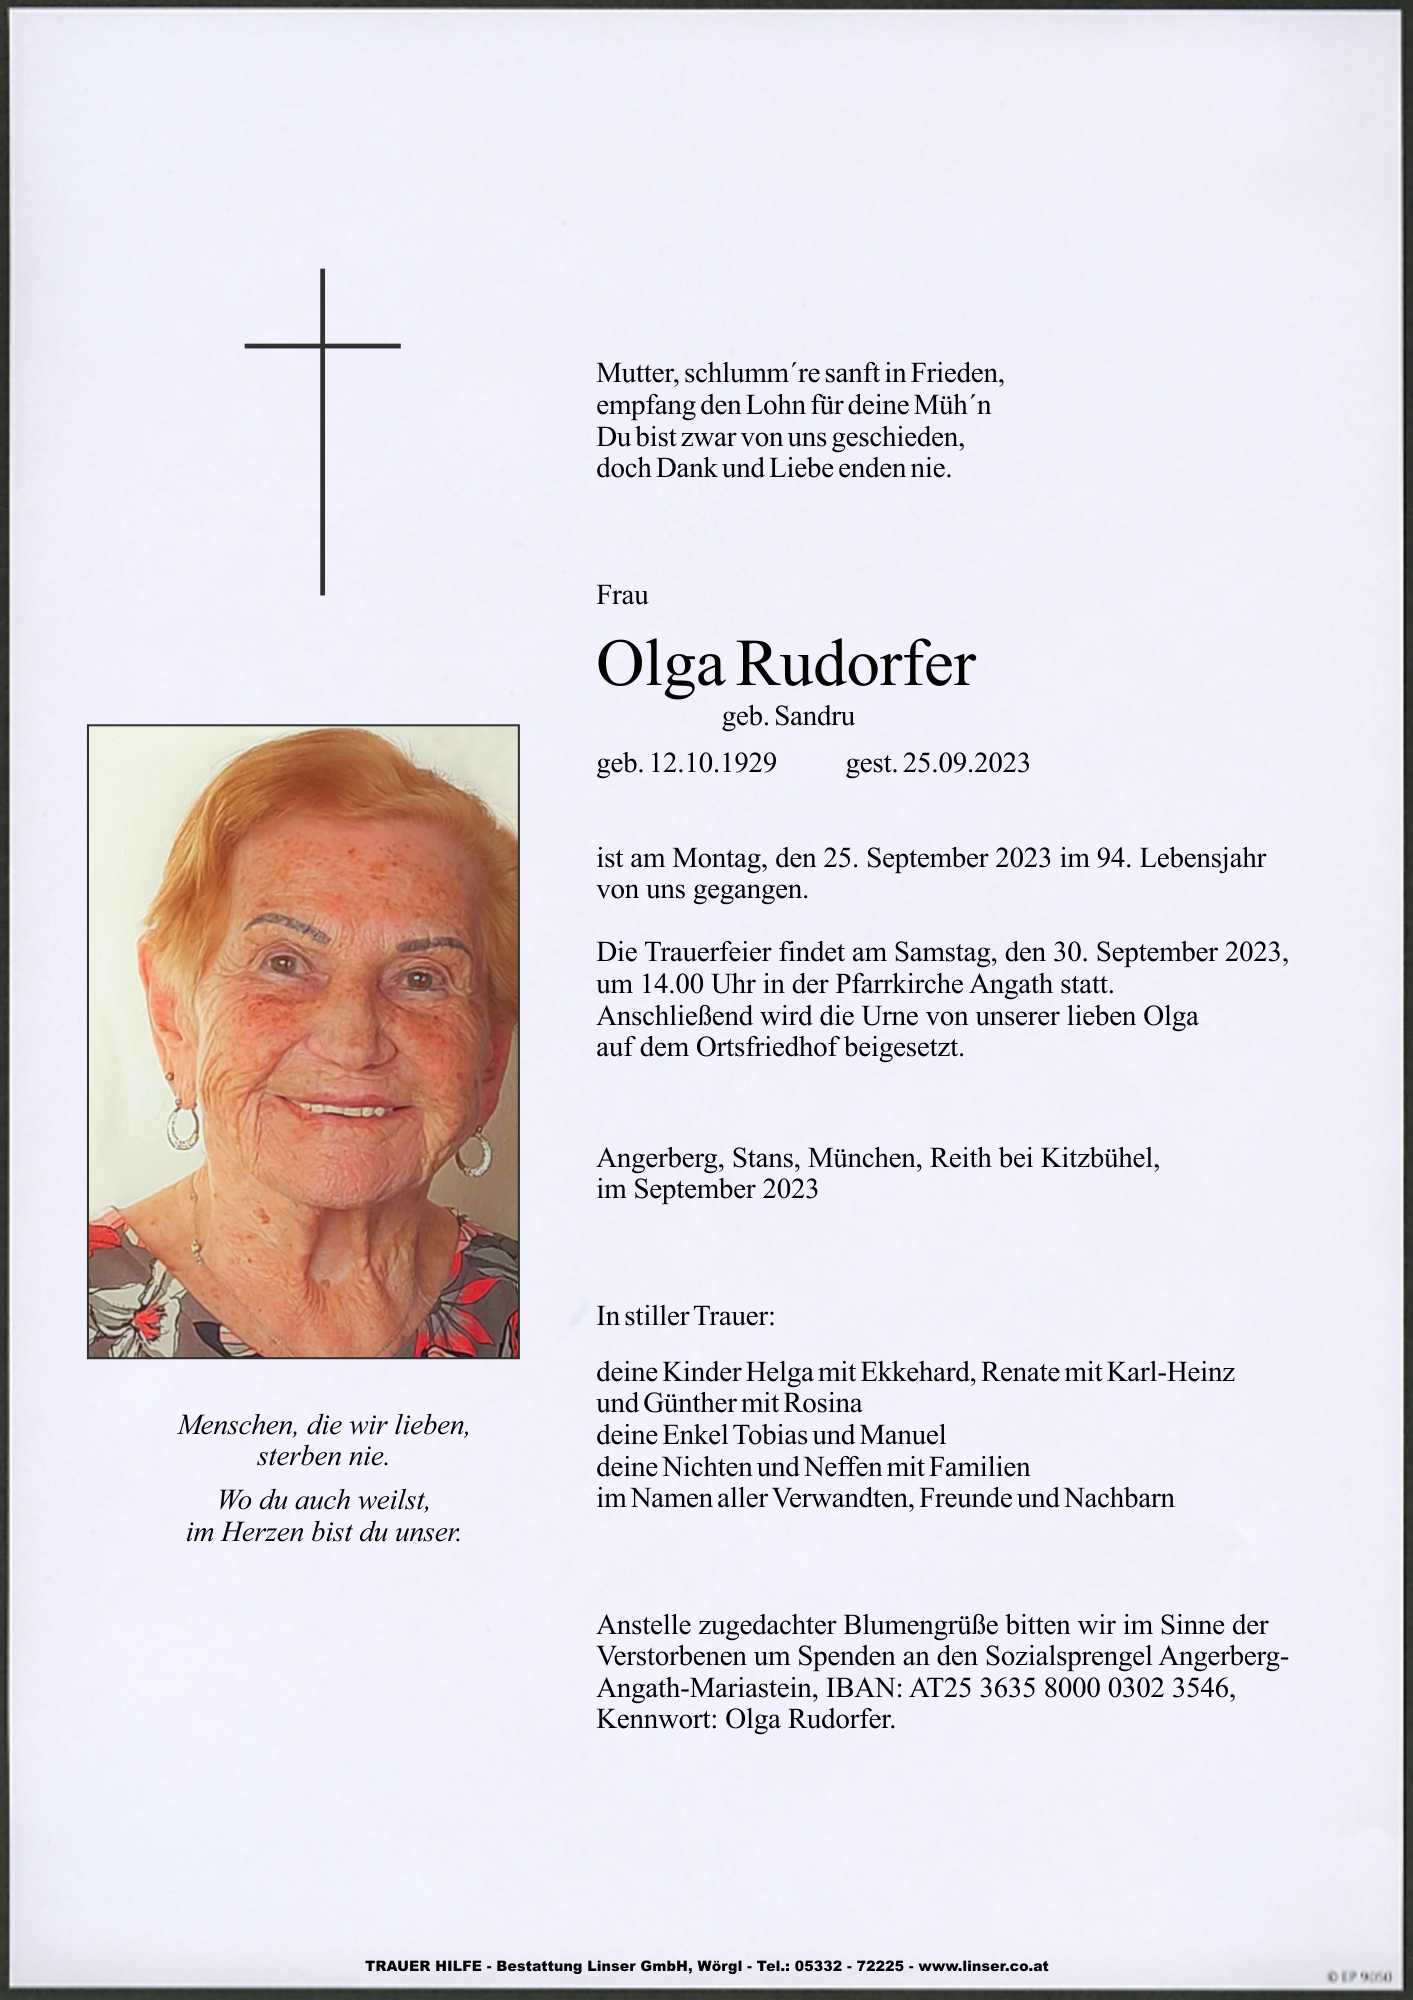 Olga Rudorfer